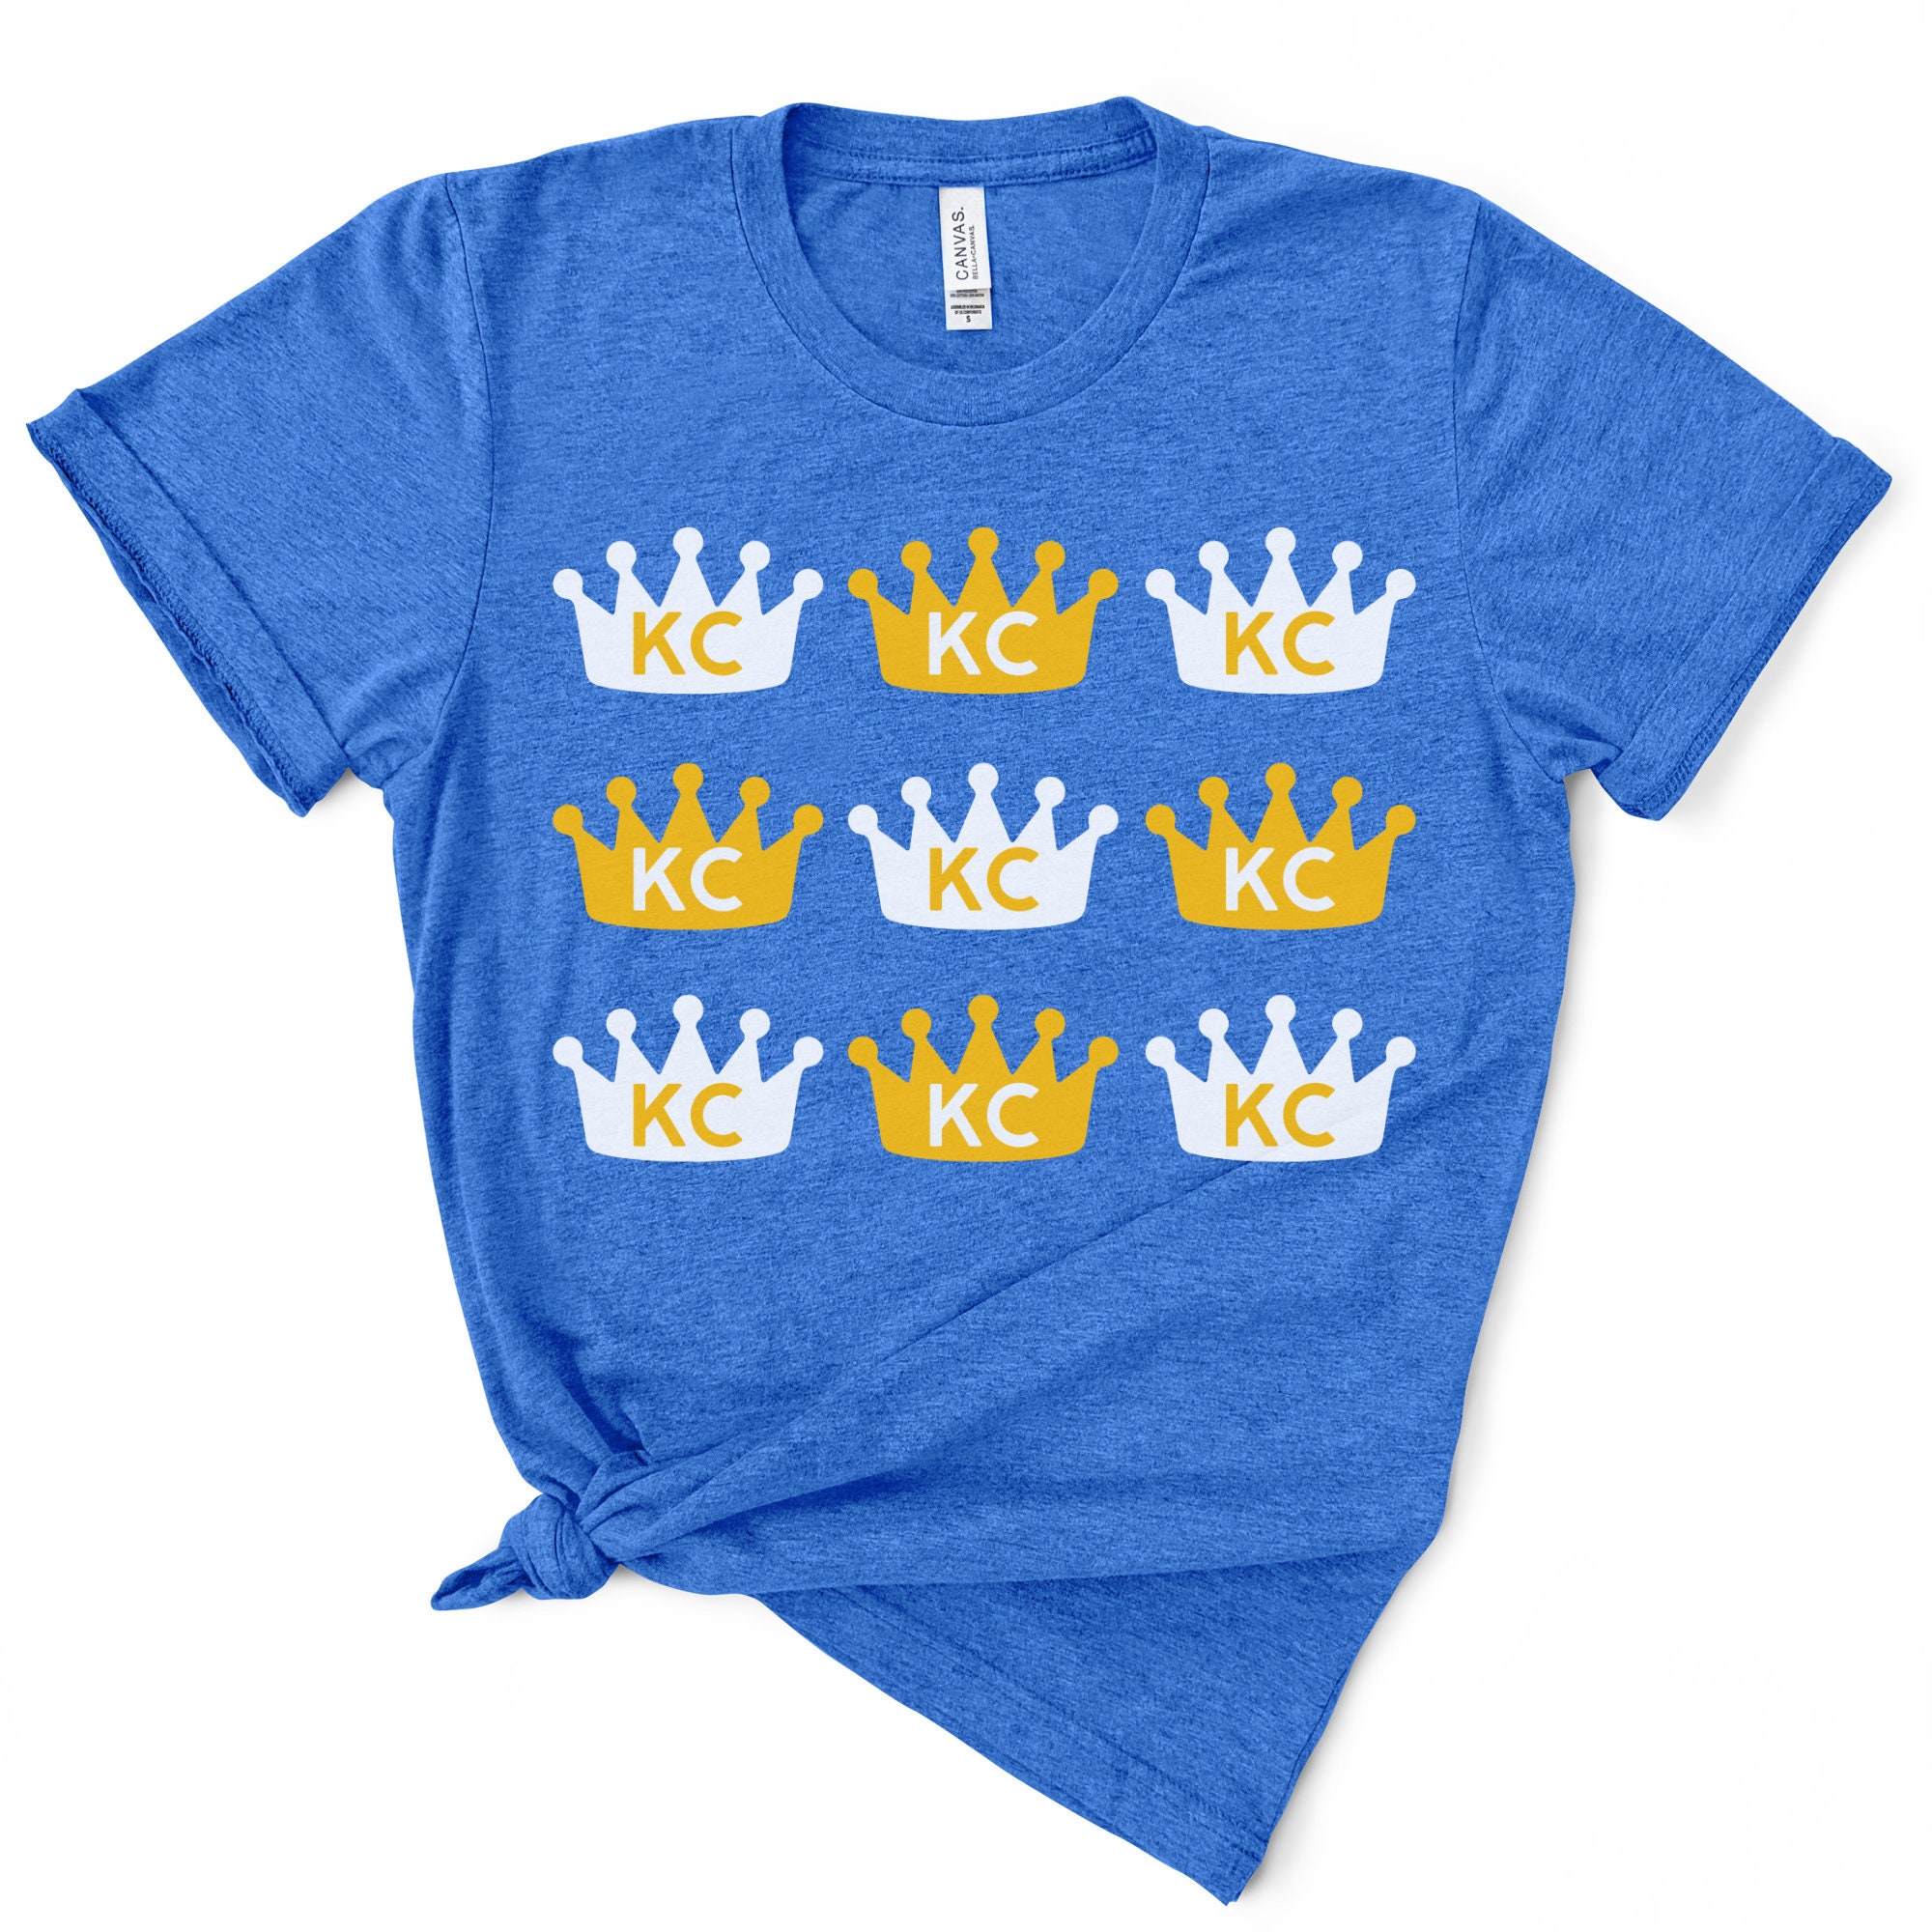 Kansas City Royals Youth Distressed Logo T-Shirt - Royal Blue